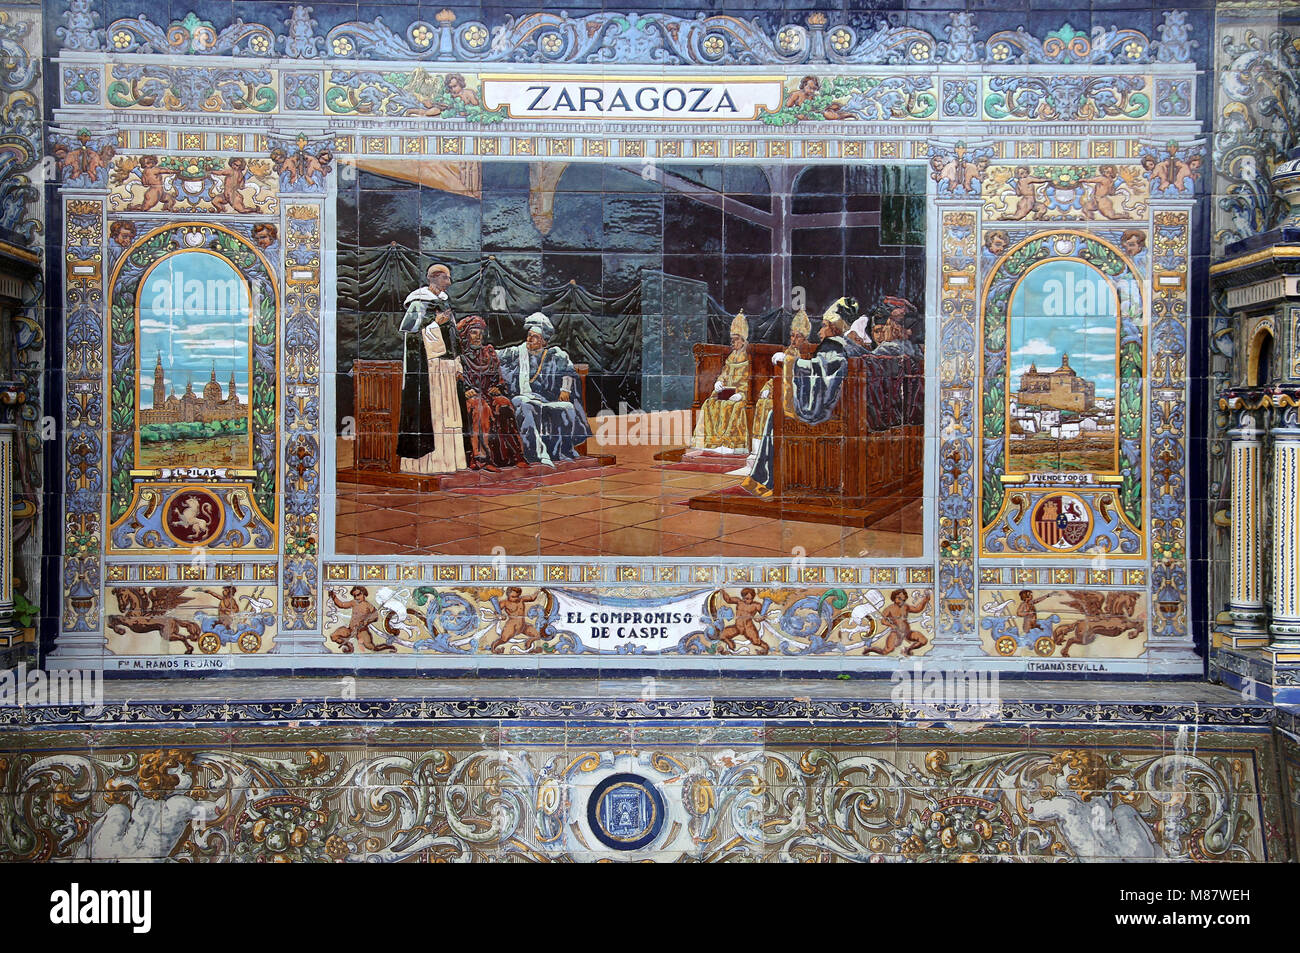 Zaragoza Darstellung in den Nischen der Provinzen an der Plaza de Espana in Sevilla Stockfoto